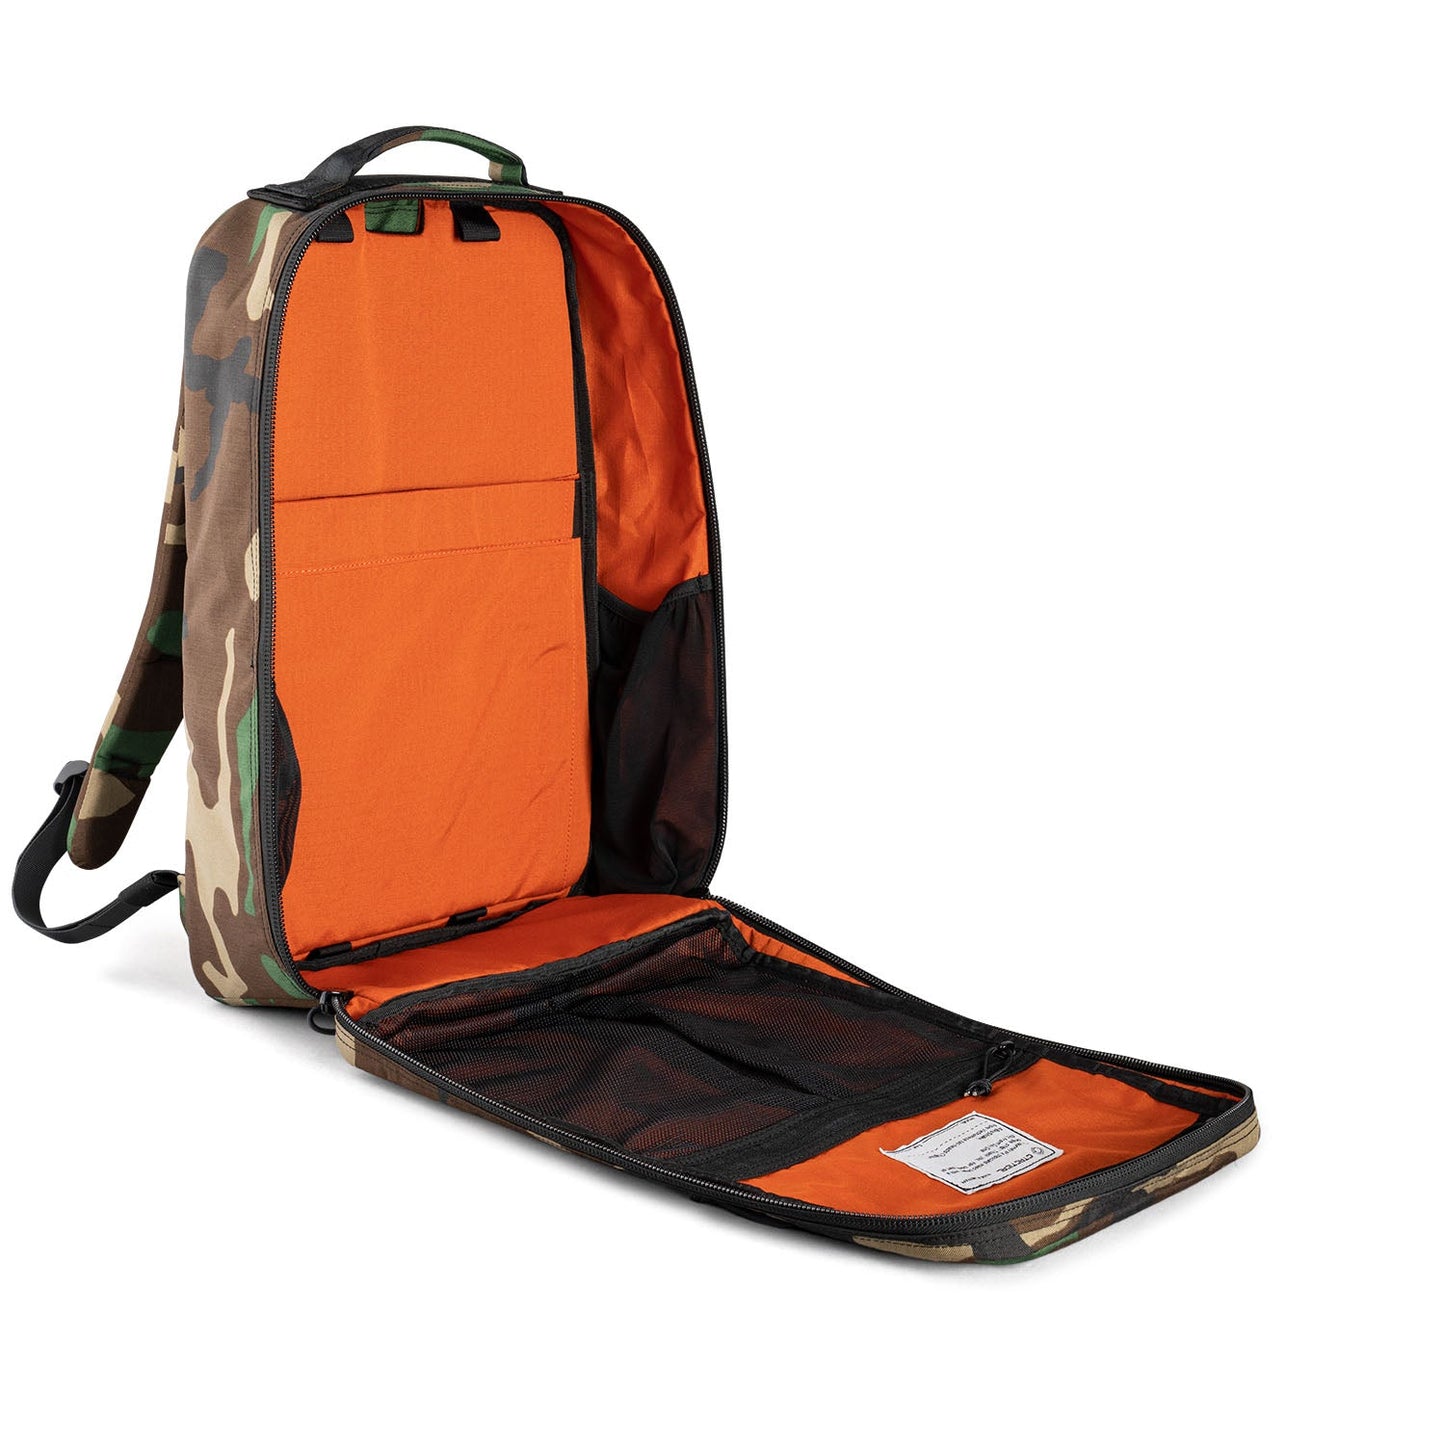 CT21 V2.0 Backpack - Slick US Woodland